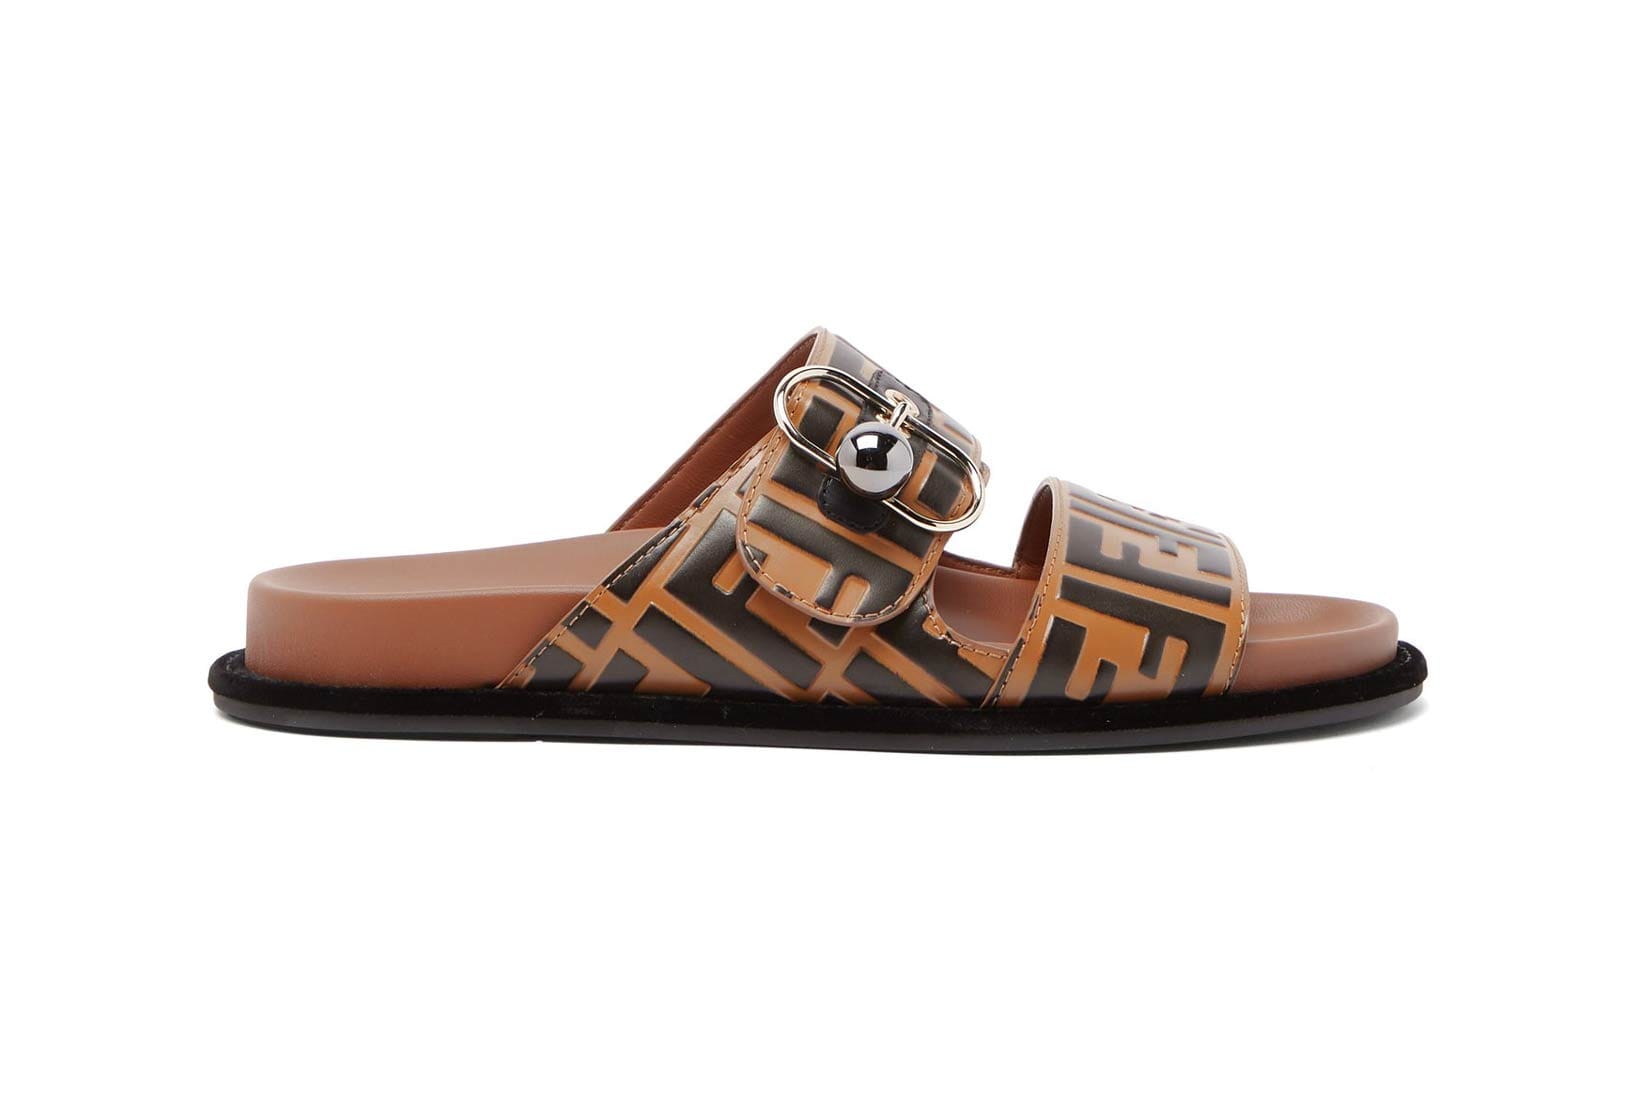 fendi logo slip on sandals